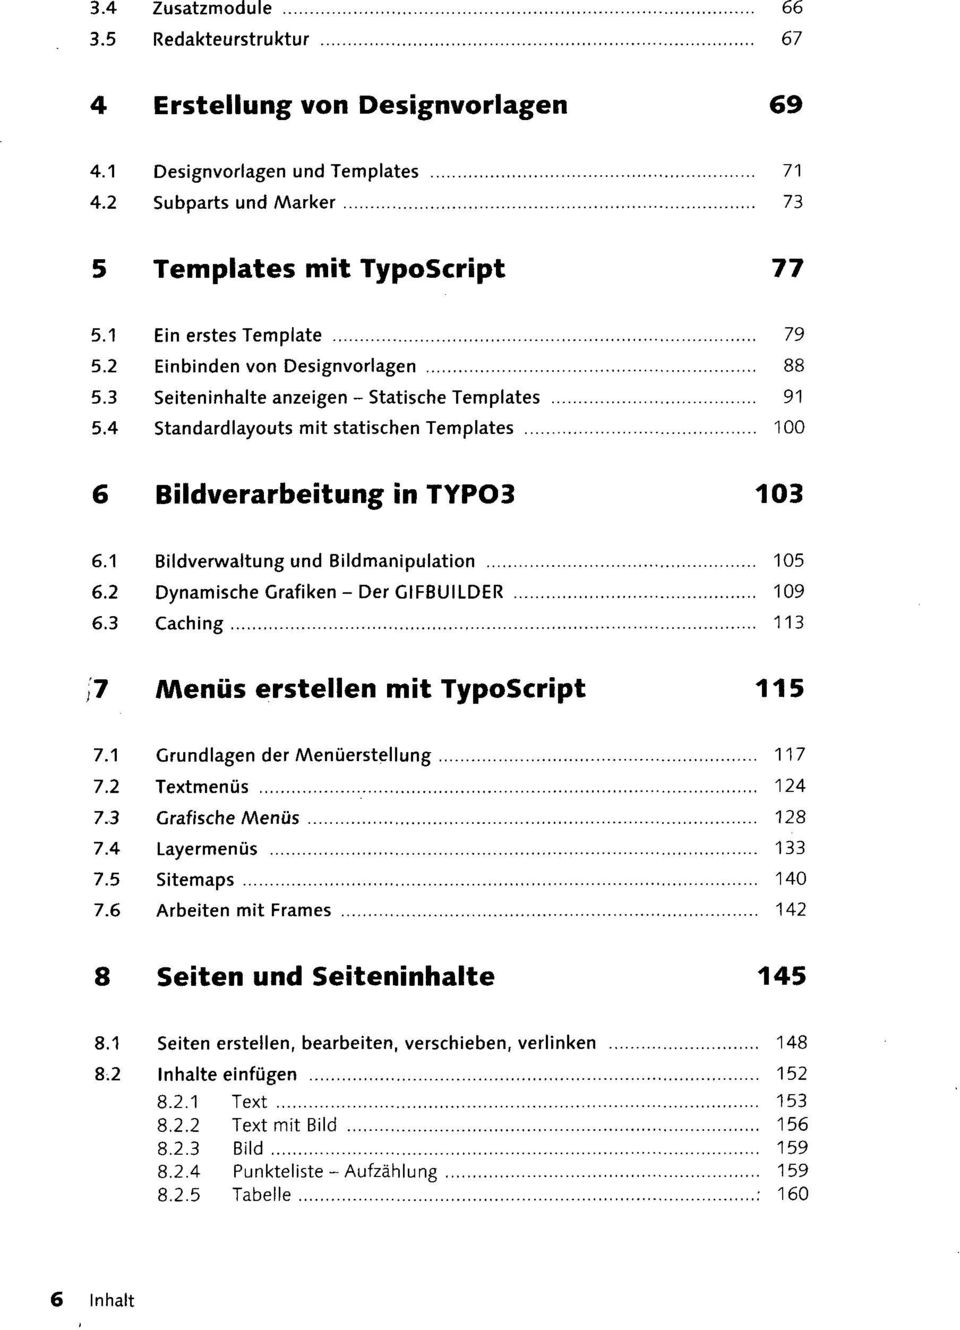 1 Bildverwaltung und Bildmanipulation 105 6.2 Dynamische Grafiken-Der CIFBUILDER 109 6.3 Caching 113 7 AAenüs erstellen mit TypoScript 115 7.1 Grundlagen der Menüerstellung 117 7.2 Textmenüs 124 7.